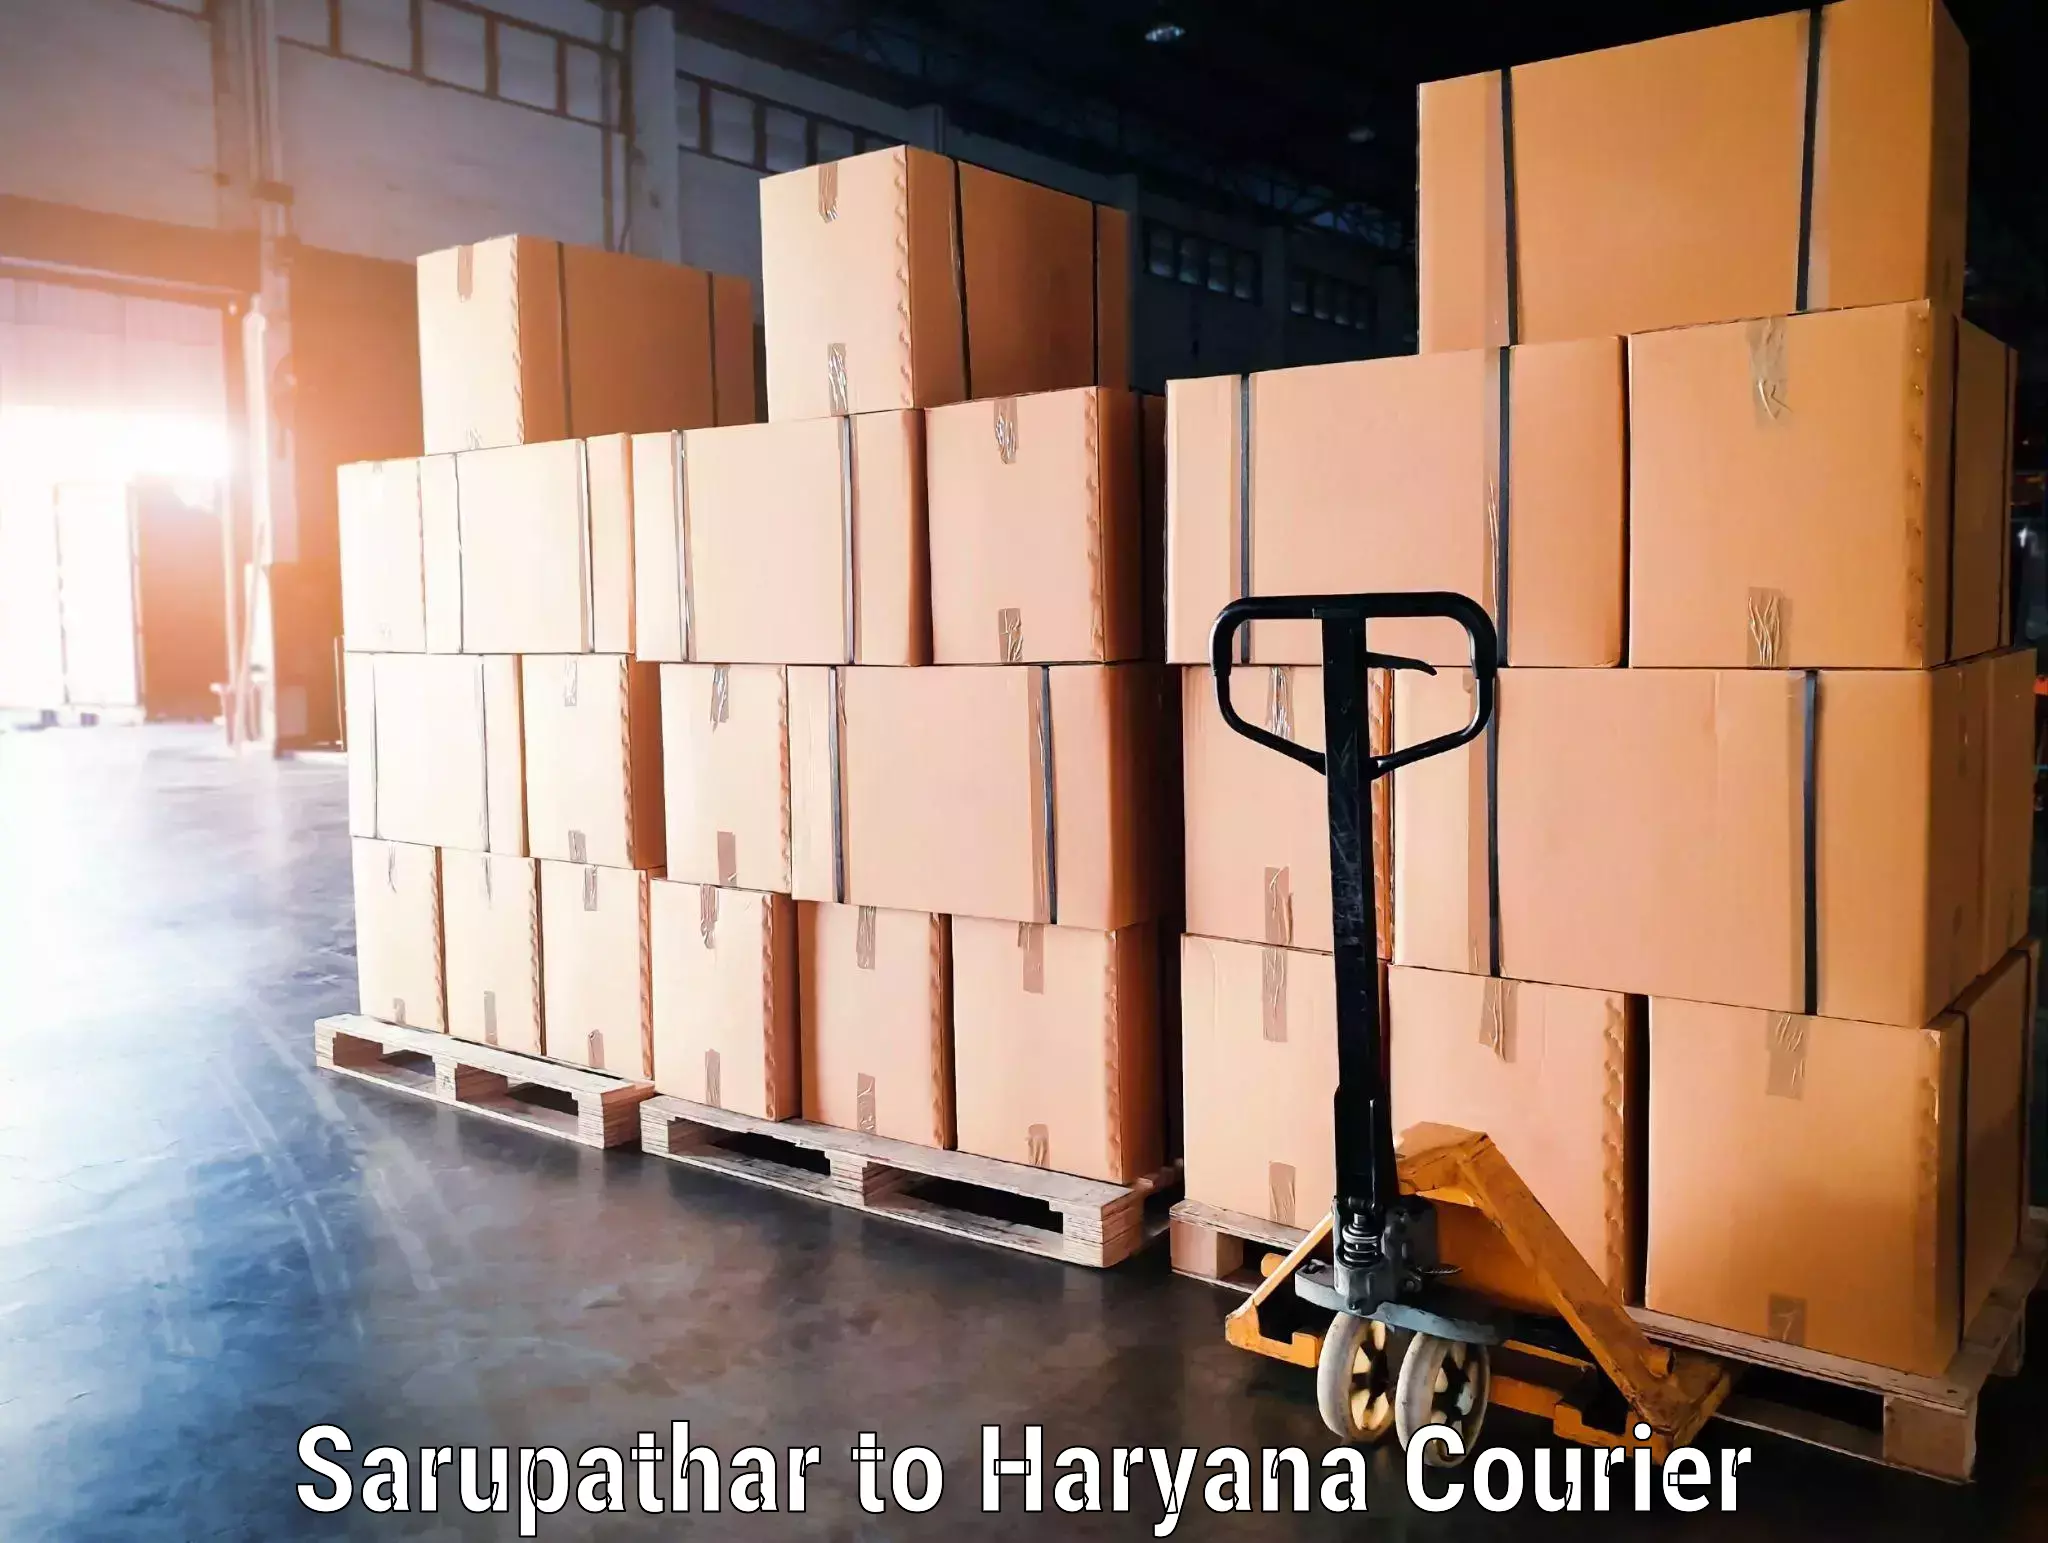 Baggage transport management in Sarupathar to Panchkula